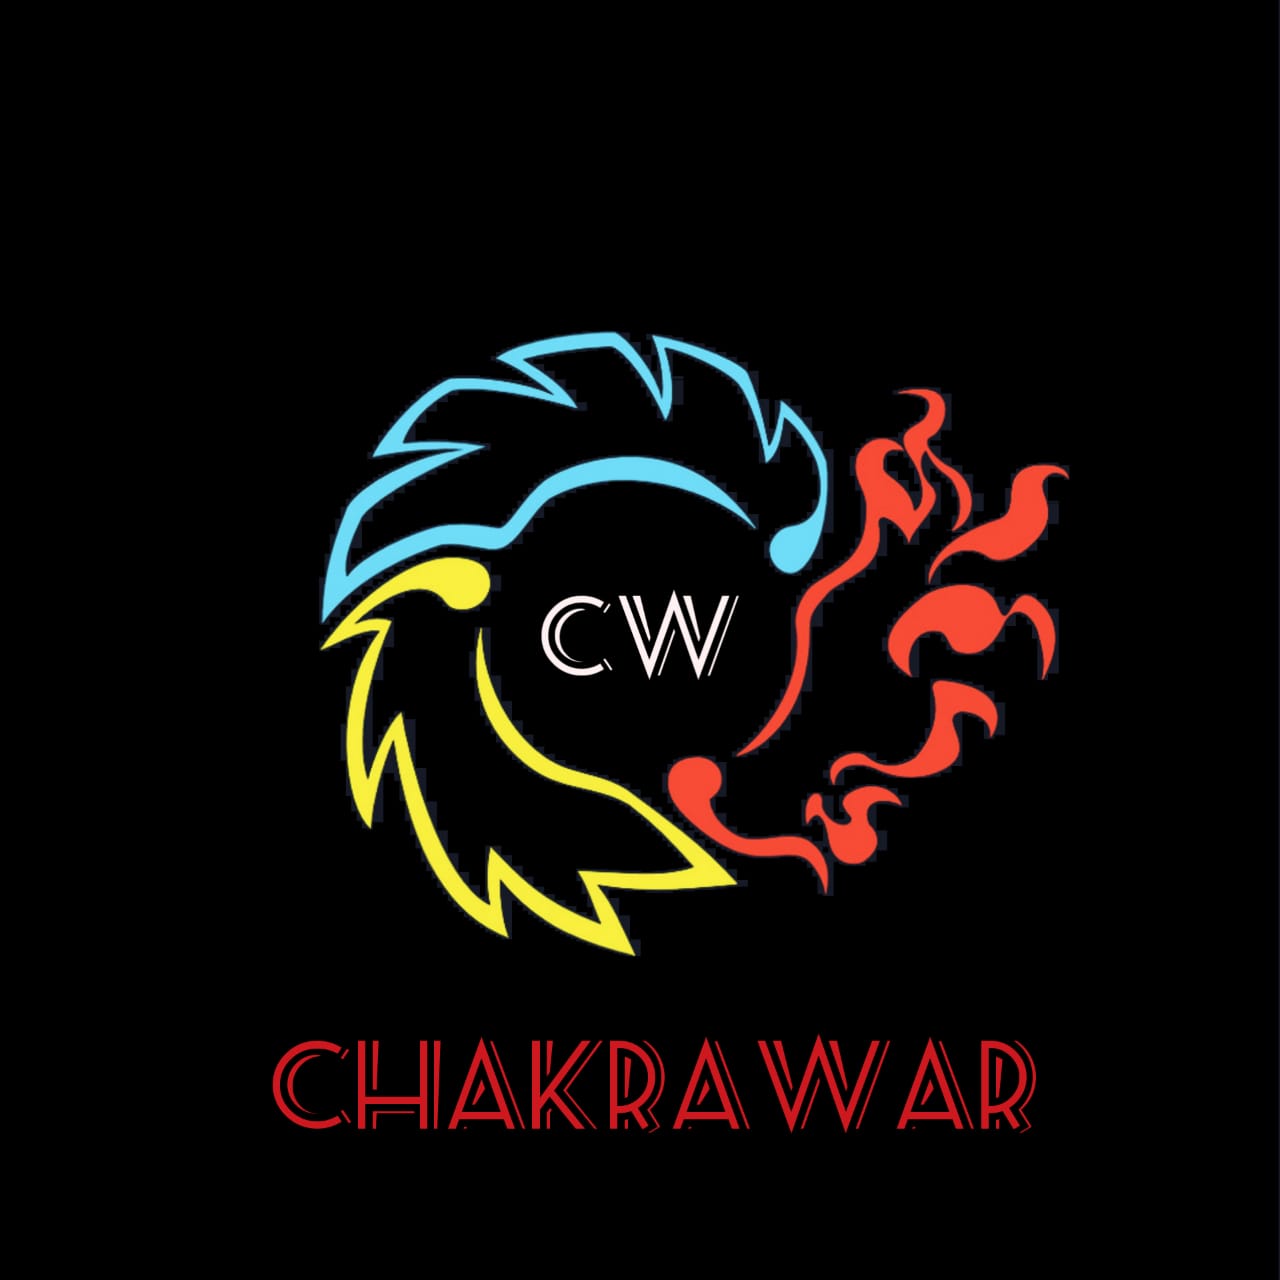 Chakrawar 2k19